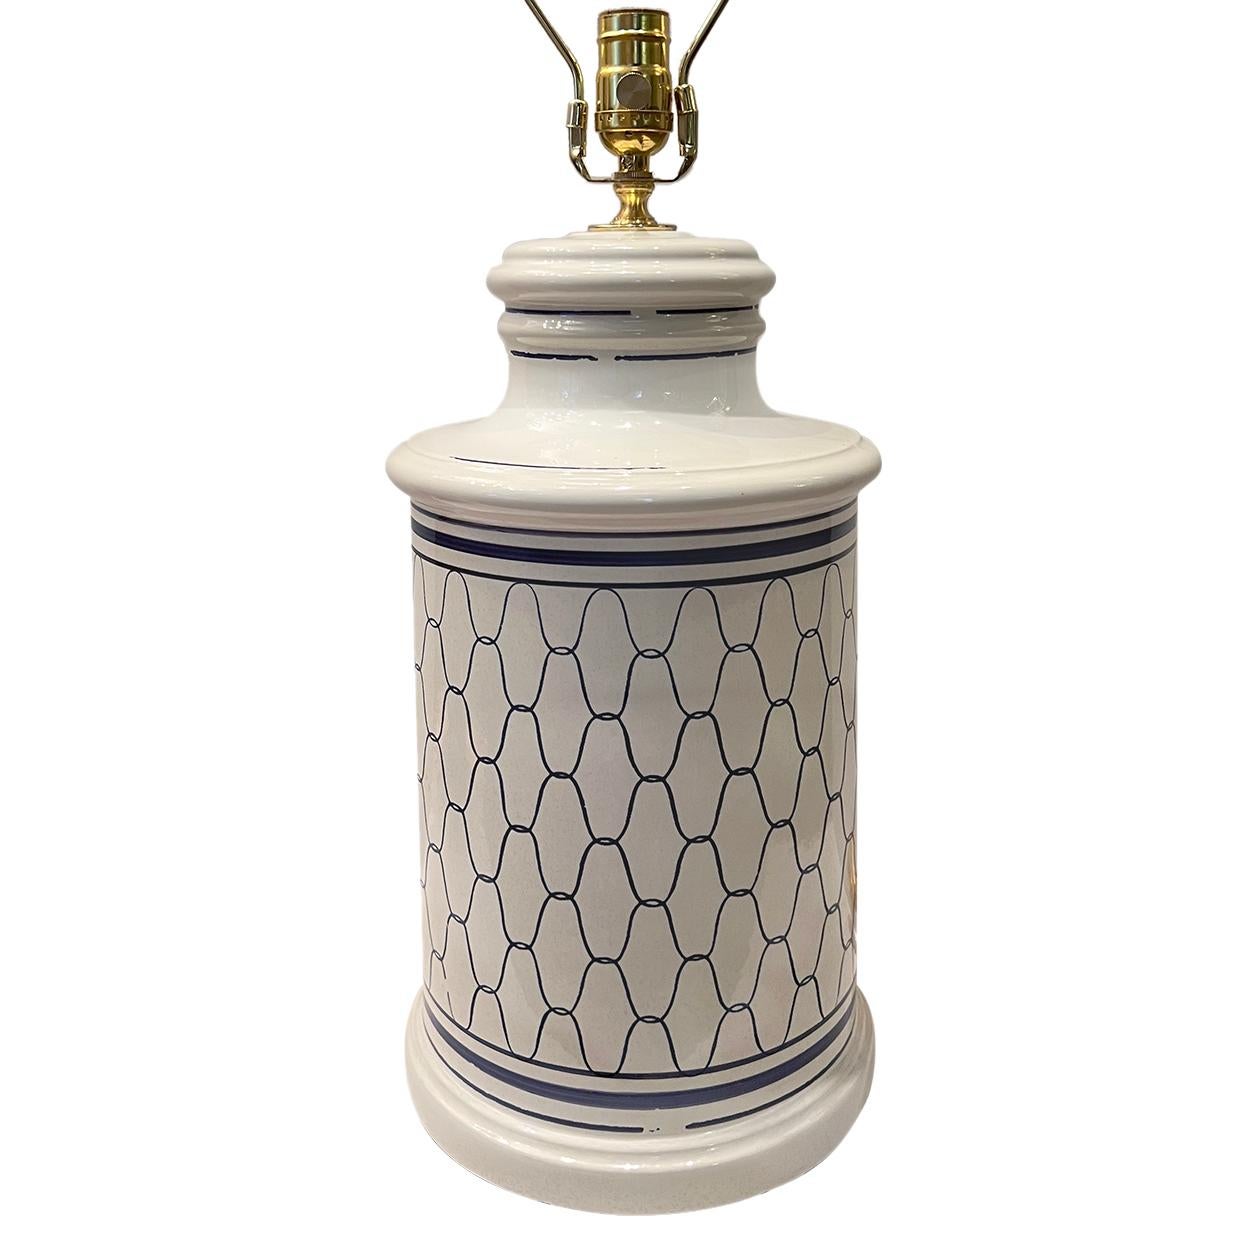 Lampe italienne en porcelaine blanche et bleue datant des années 1950.

Mesures :
Hauteur du corps : 17